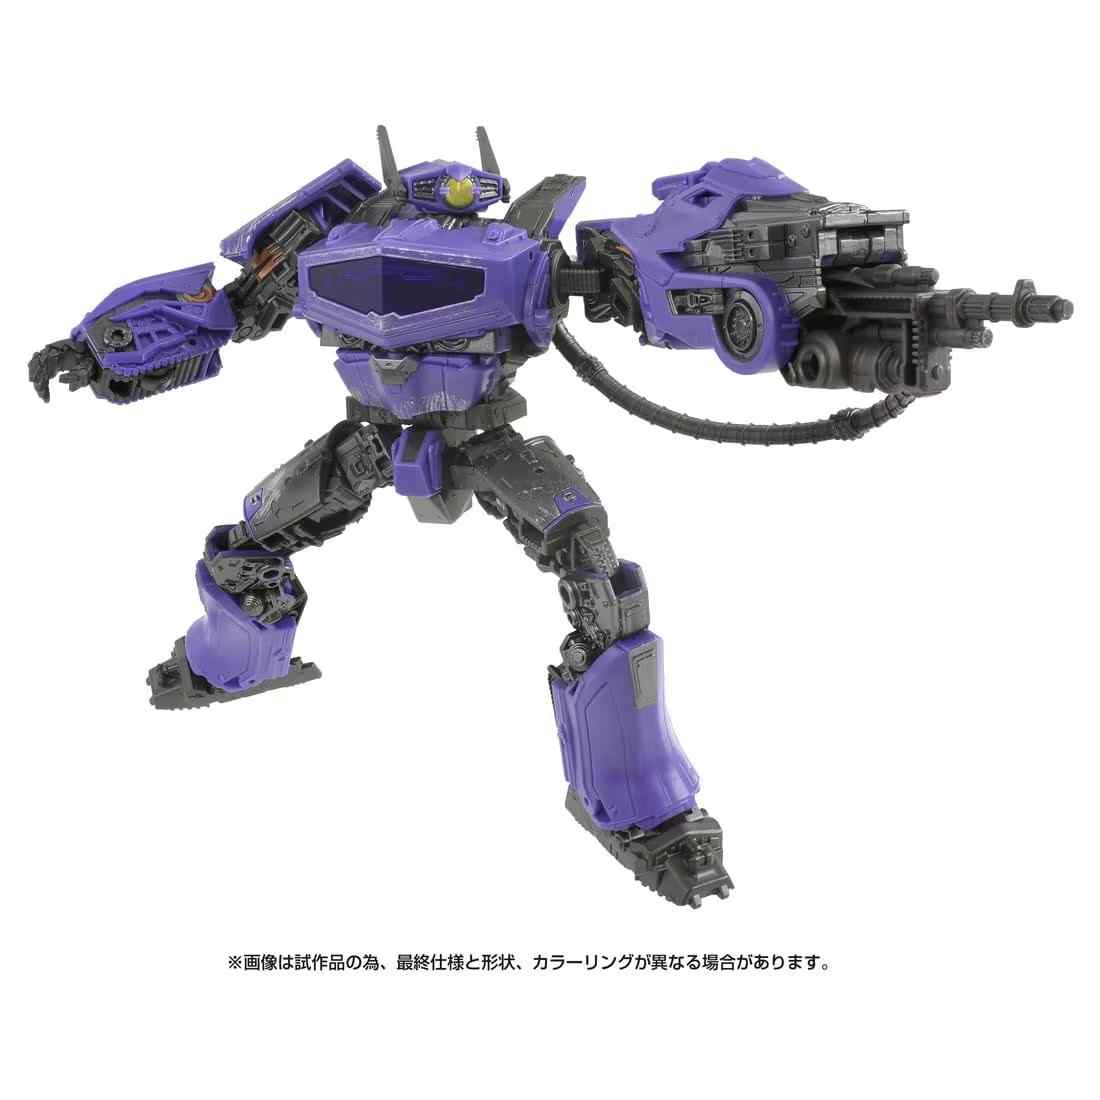 トランスフォーマームービー SS-130 ショックウェーブ ロボット玩具【予約】